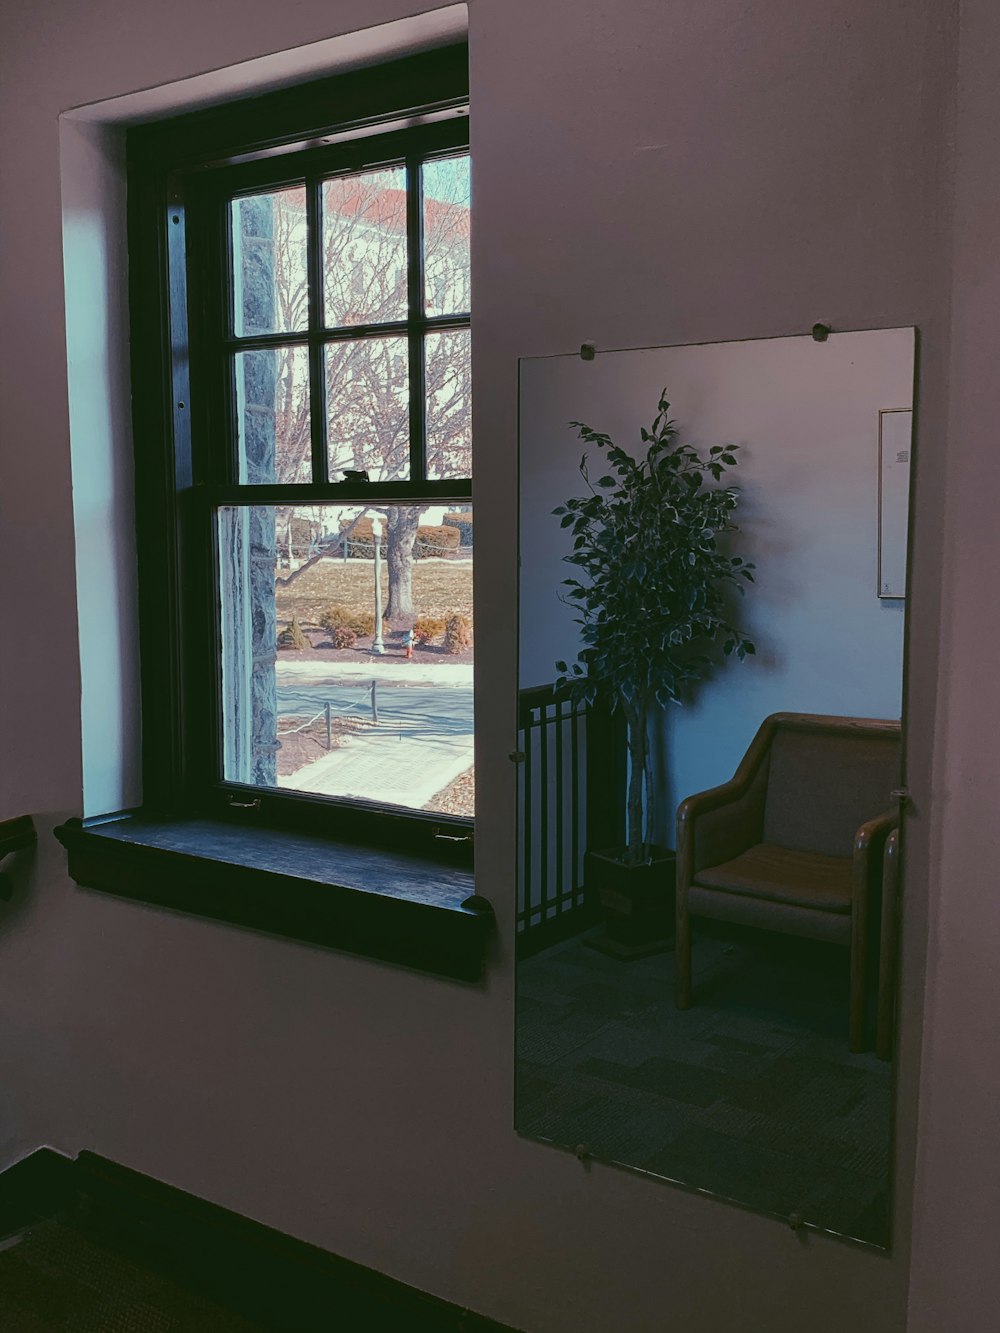 janela deslizante ao lado do espelho de parede durante o dia